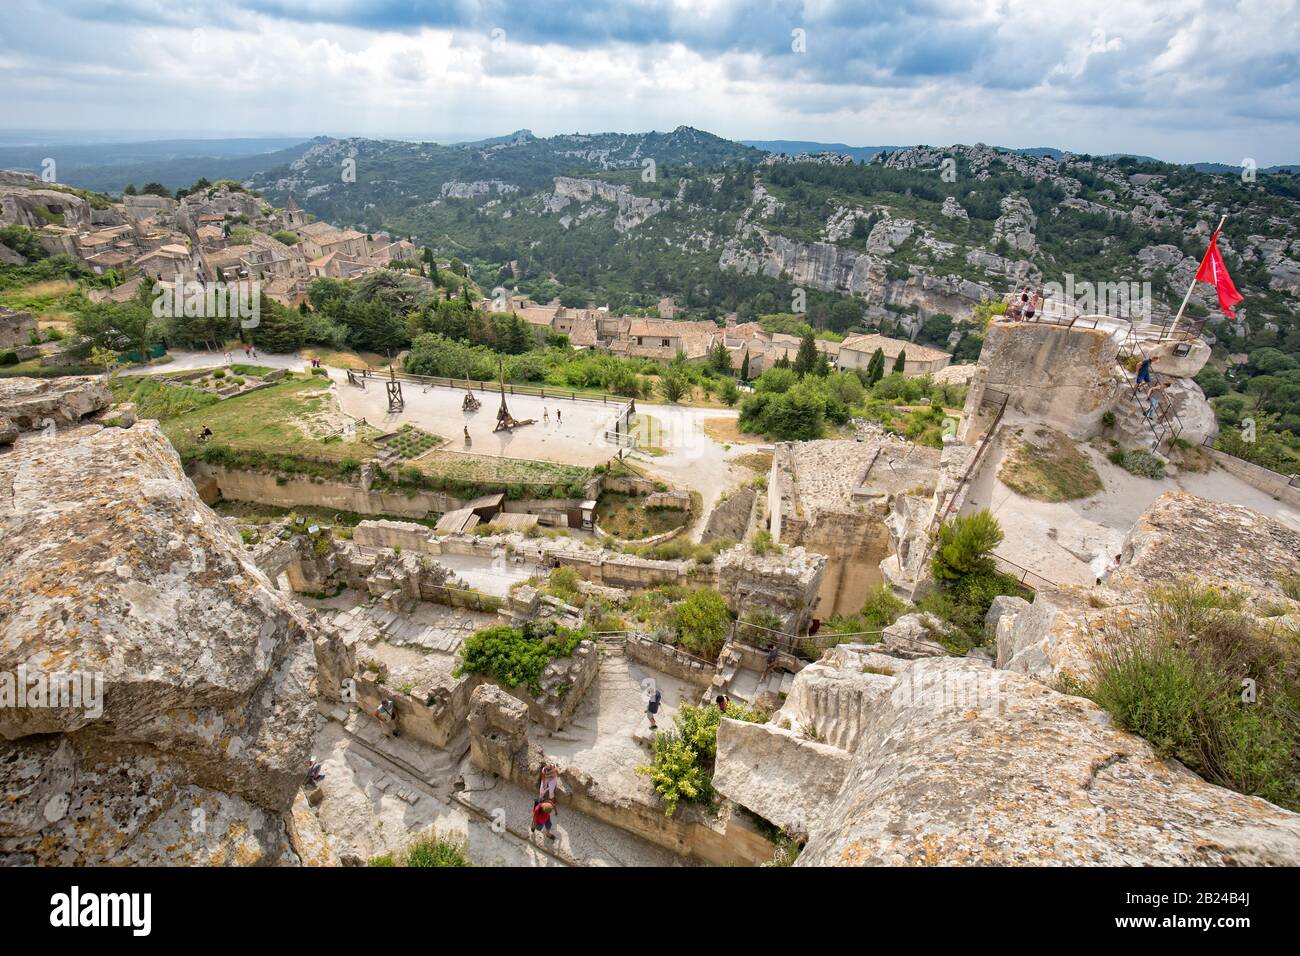 Les Baux-de-Provence, Provenza, Francia - Jun 05 2017: Situado sobre un afloramiento rocoso, el Castillo de Les Baux y ofrece increíbles vistas panorámicas Foto de stock